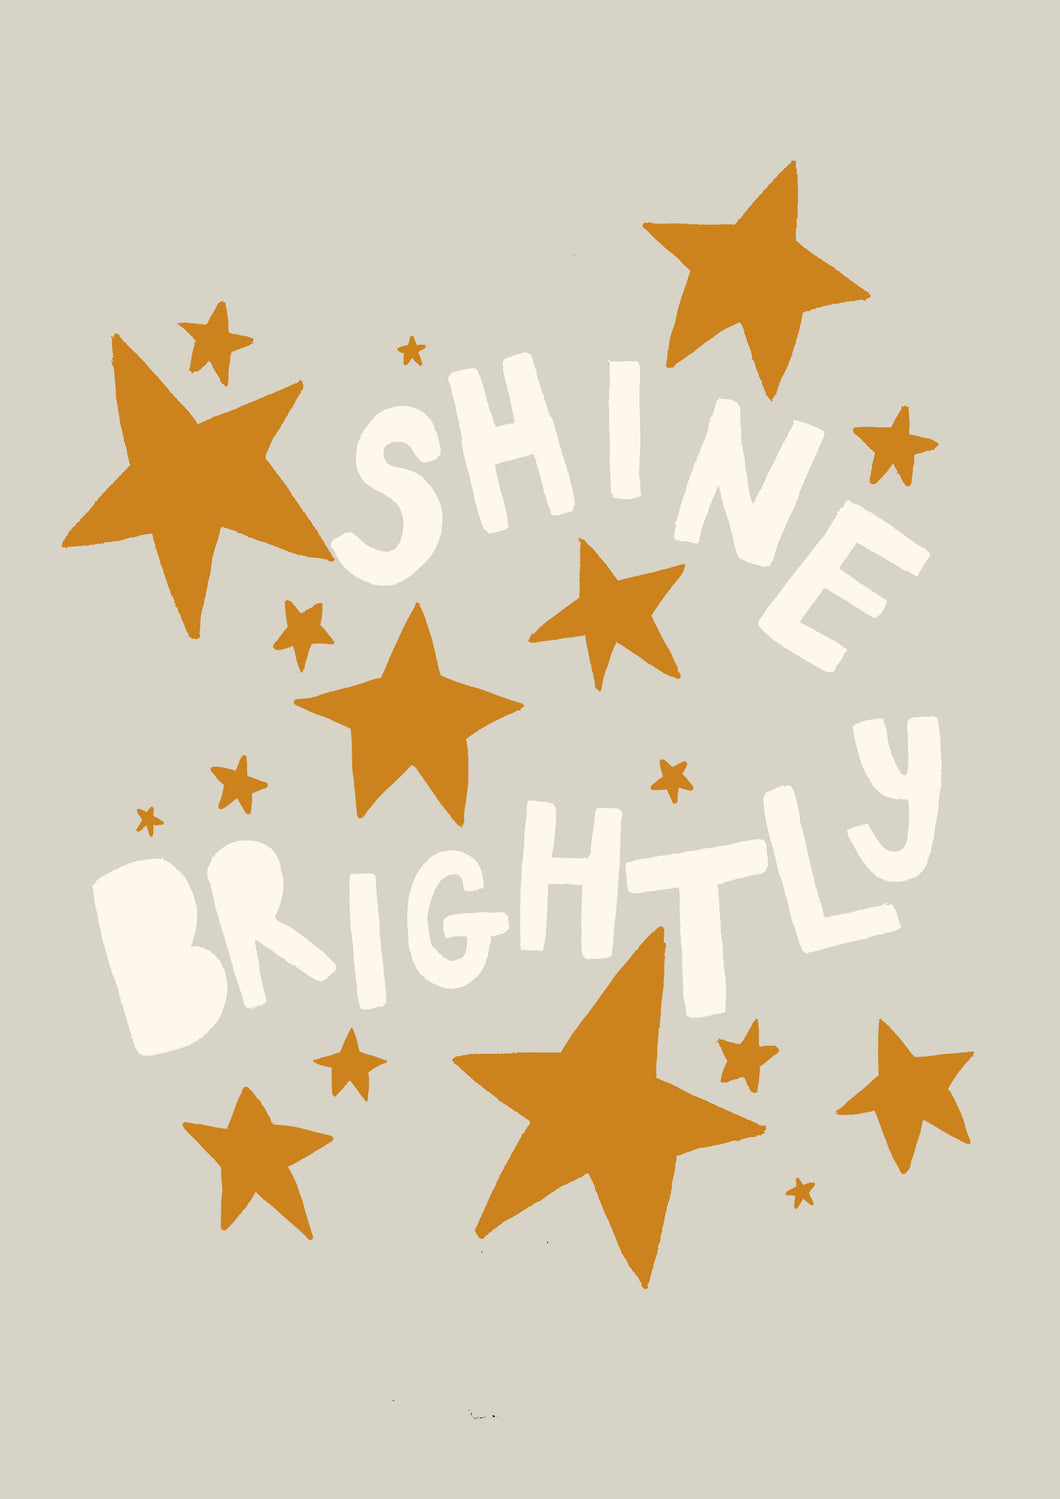 Shine Bright!